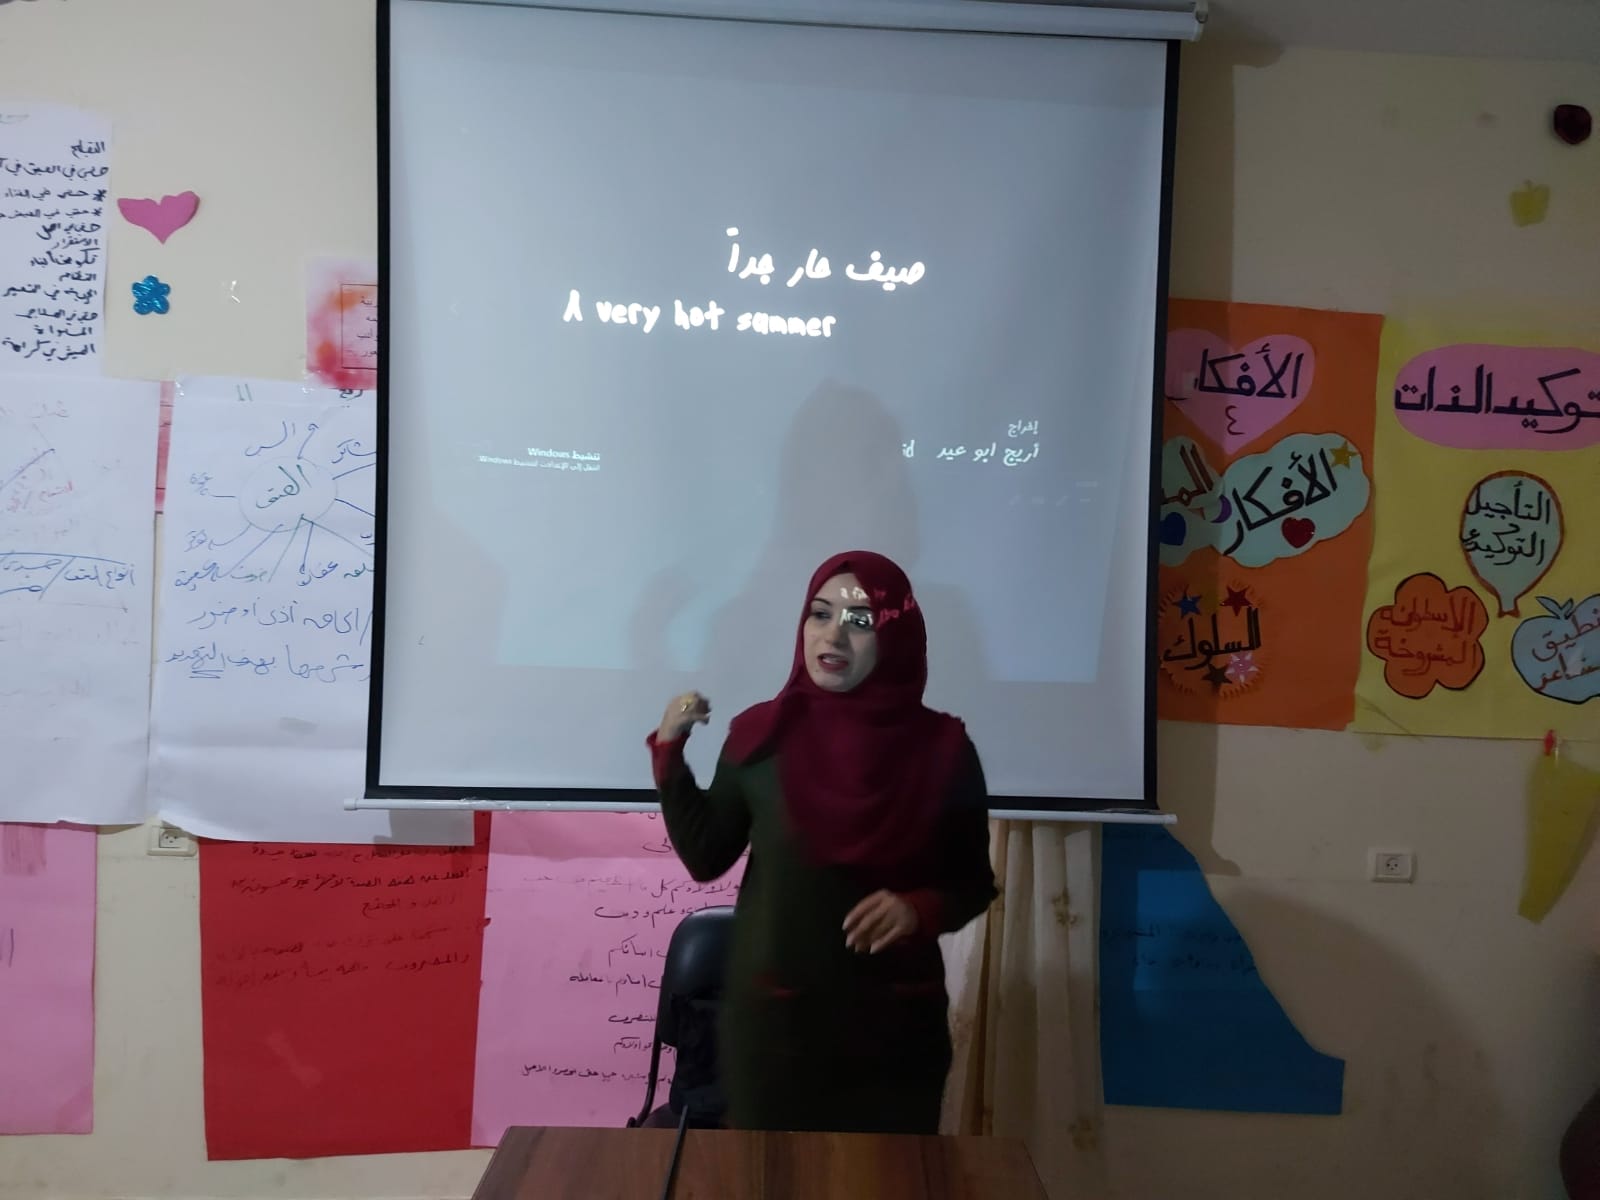 ضمن مشروع” يلا نشوف فيلم” اتحاد لجان المرأة الفلسطينية يعرض فيلم صيف حار جدا.